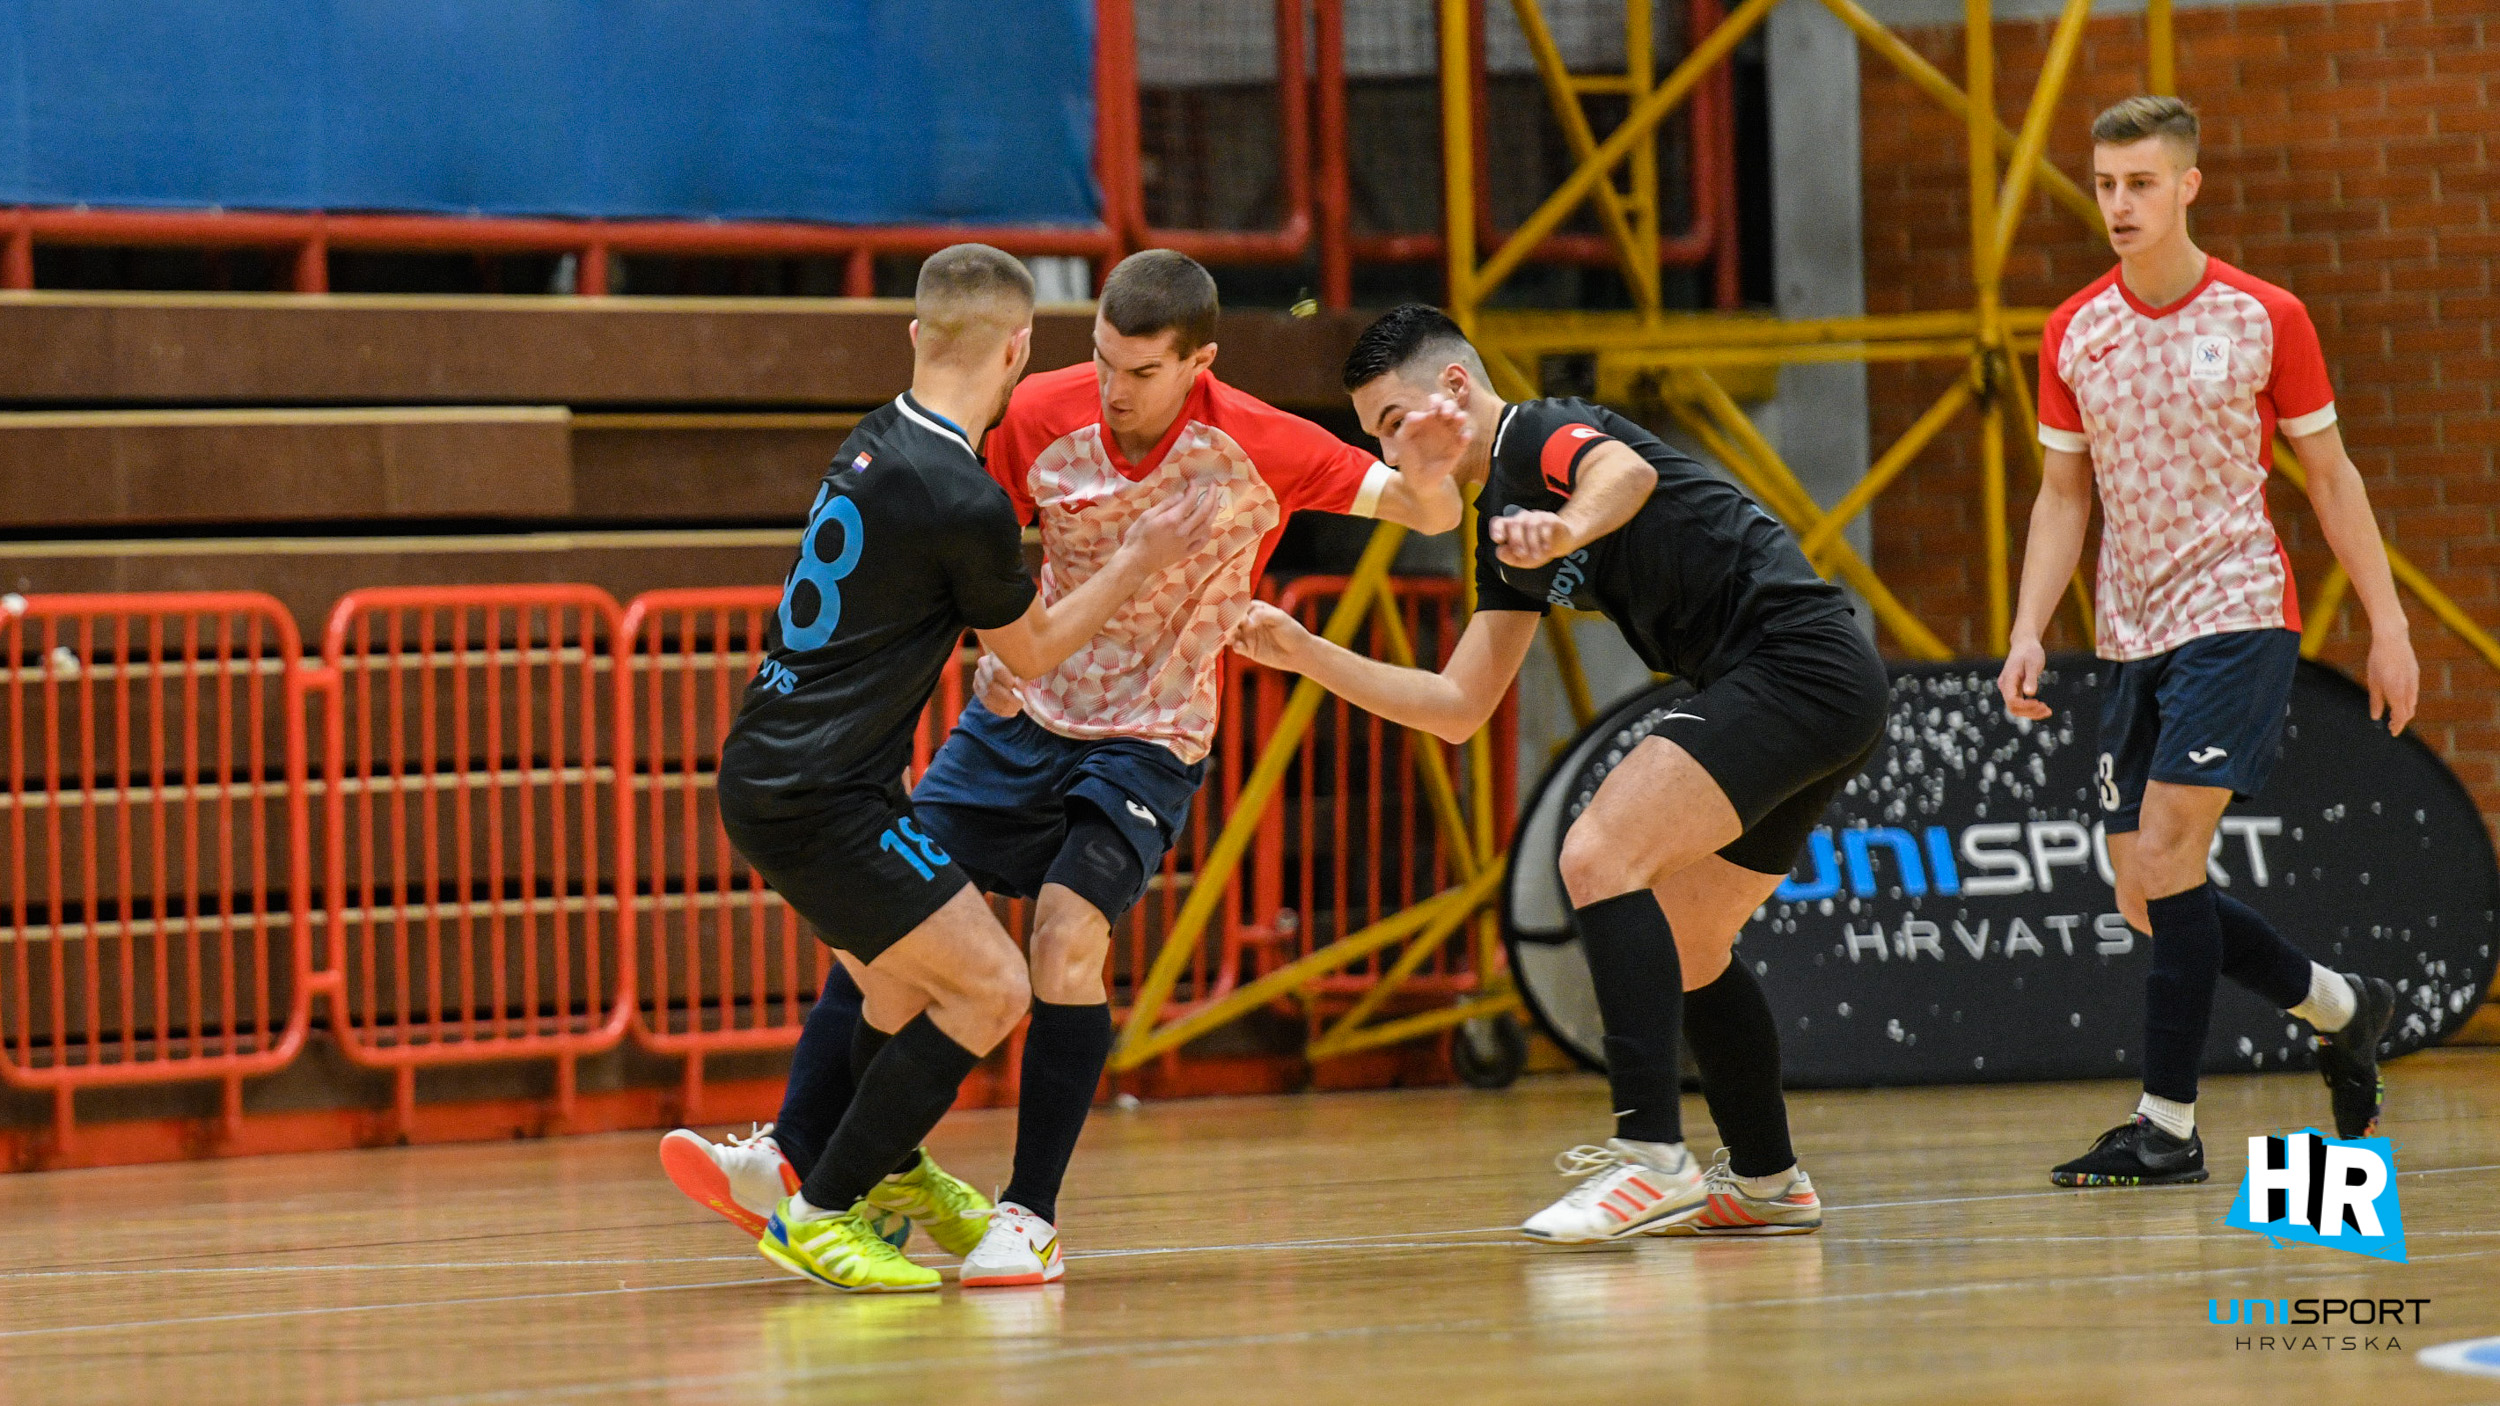 UniSportHR futsal liga za akademsku godinu 2021./2022. službeno je započela u Zagrebu utakmicama prva tri kola.